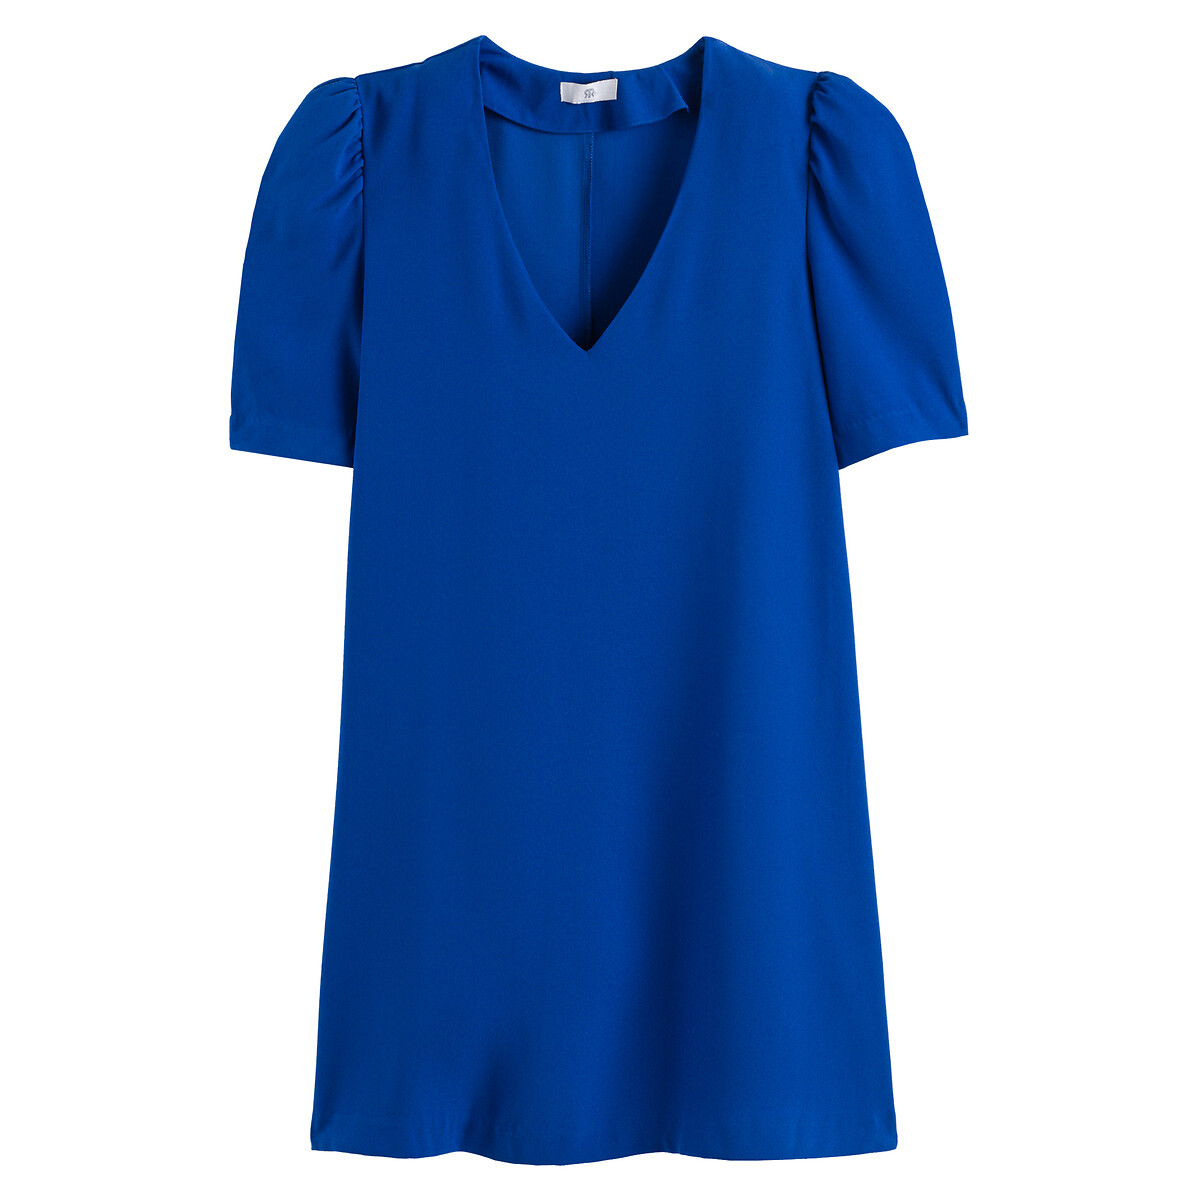 Платье Короткое с V-образным вырезом короткие рукава 56 синий LaRedoute, размер 56 - фото 5